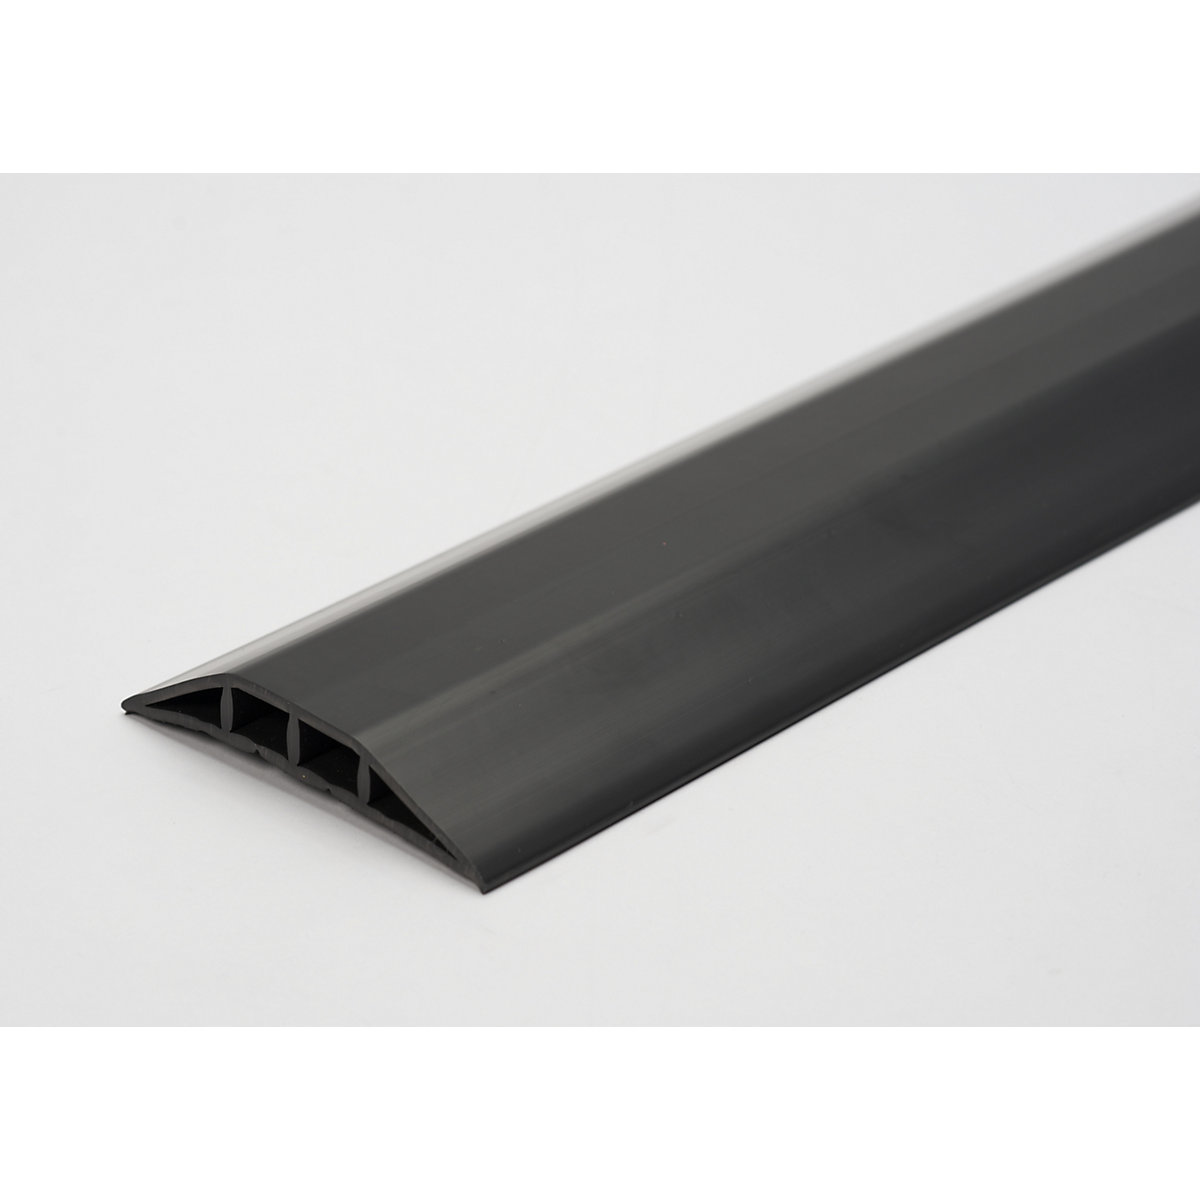 Canalina passacavo in plastica, per cavi e tubi flessibili con Ø fino a 10 mm, nero, 2 camere, lunghezza 1,5 m-4